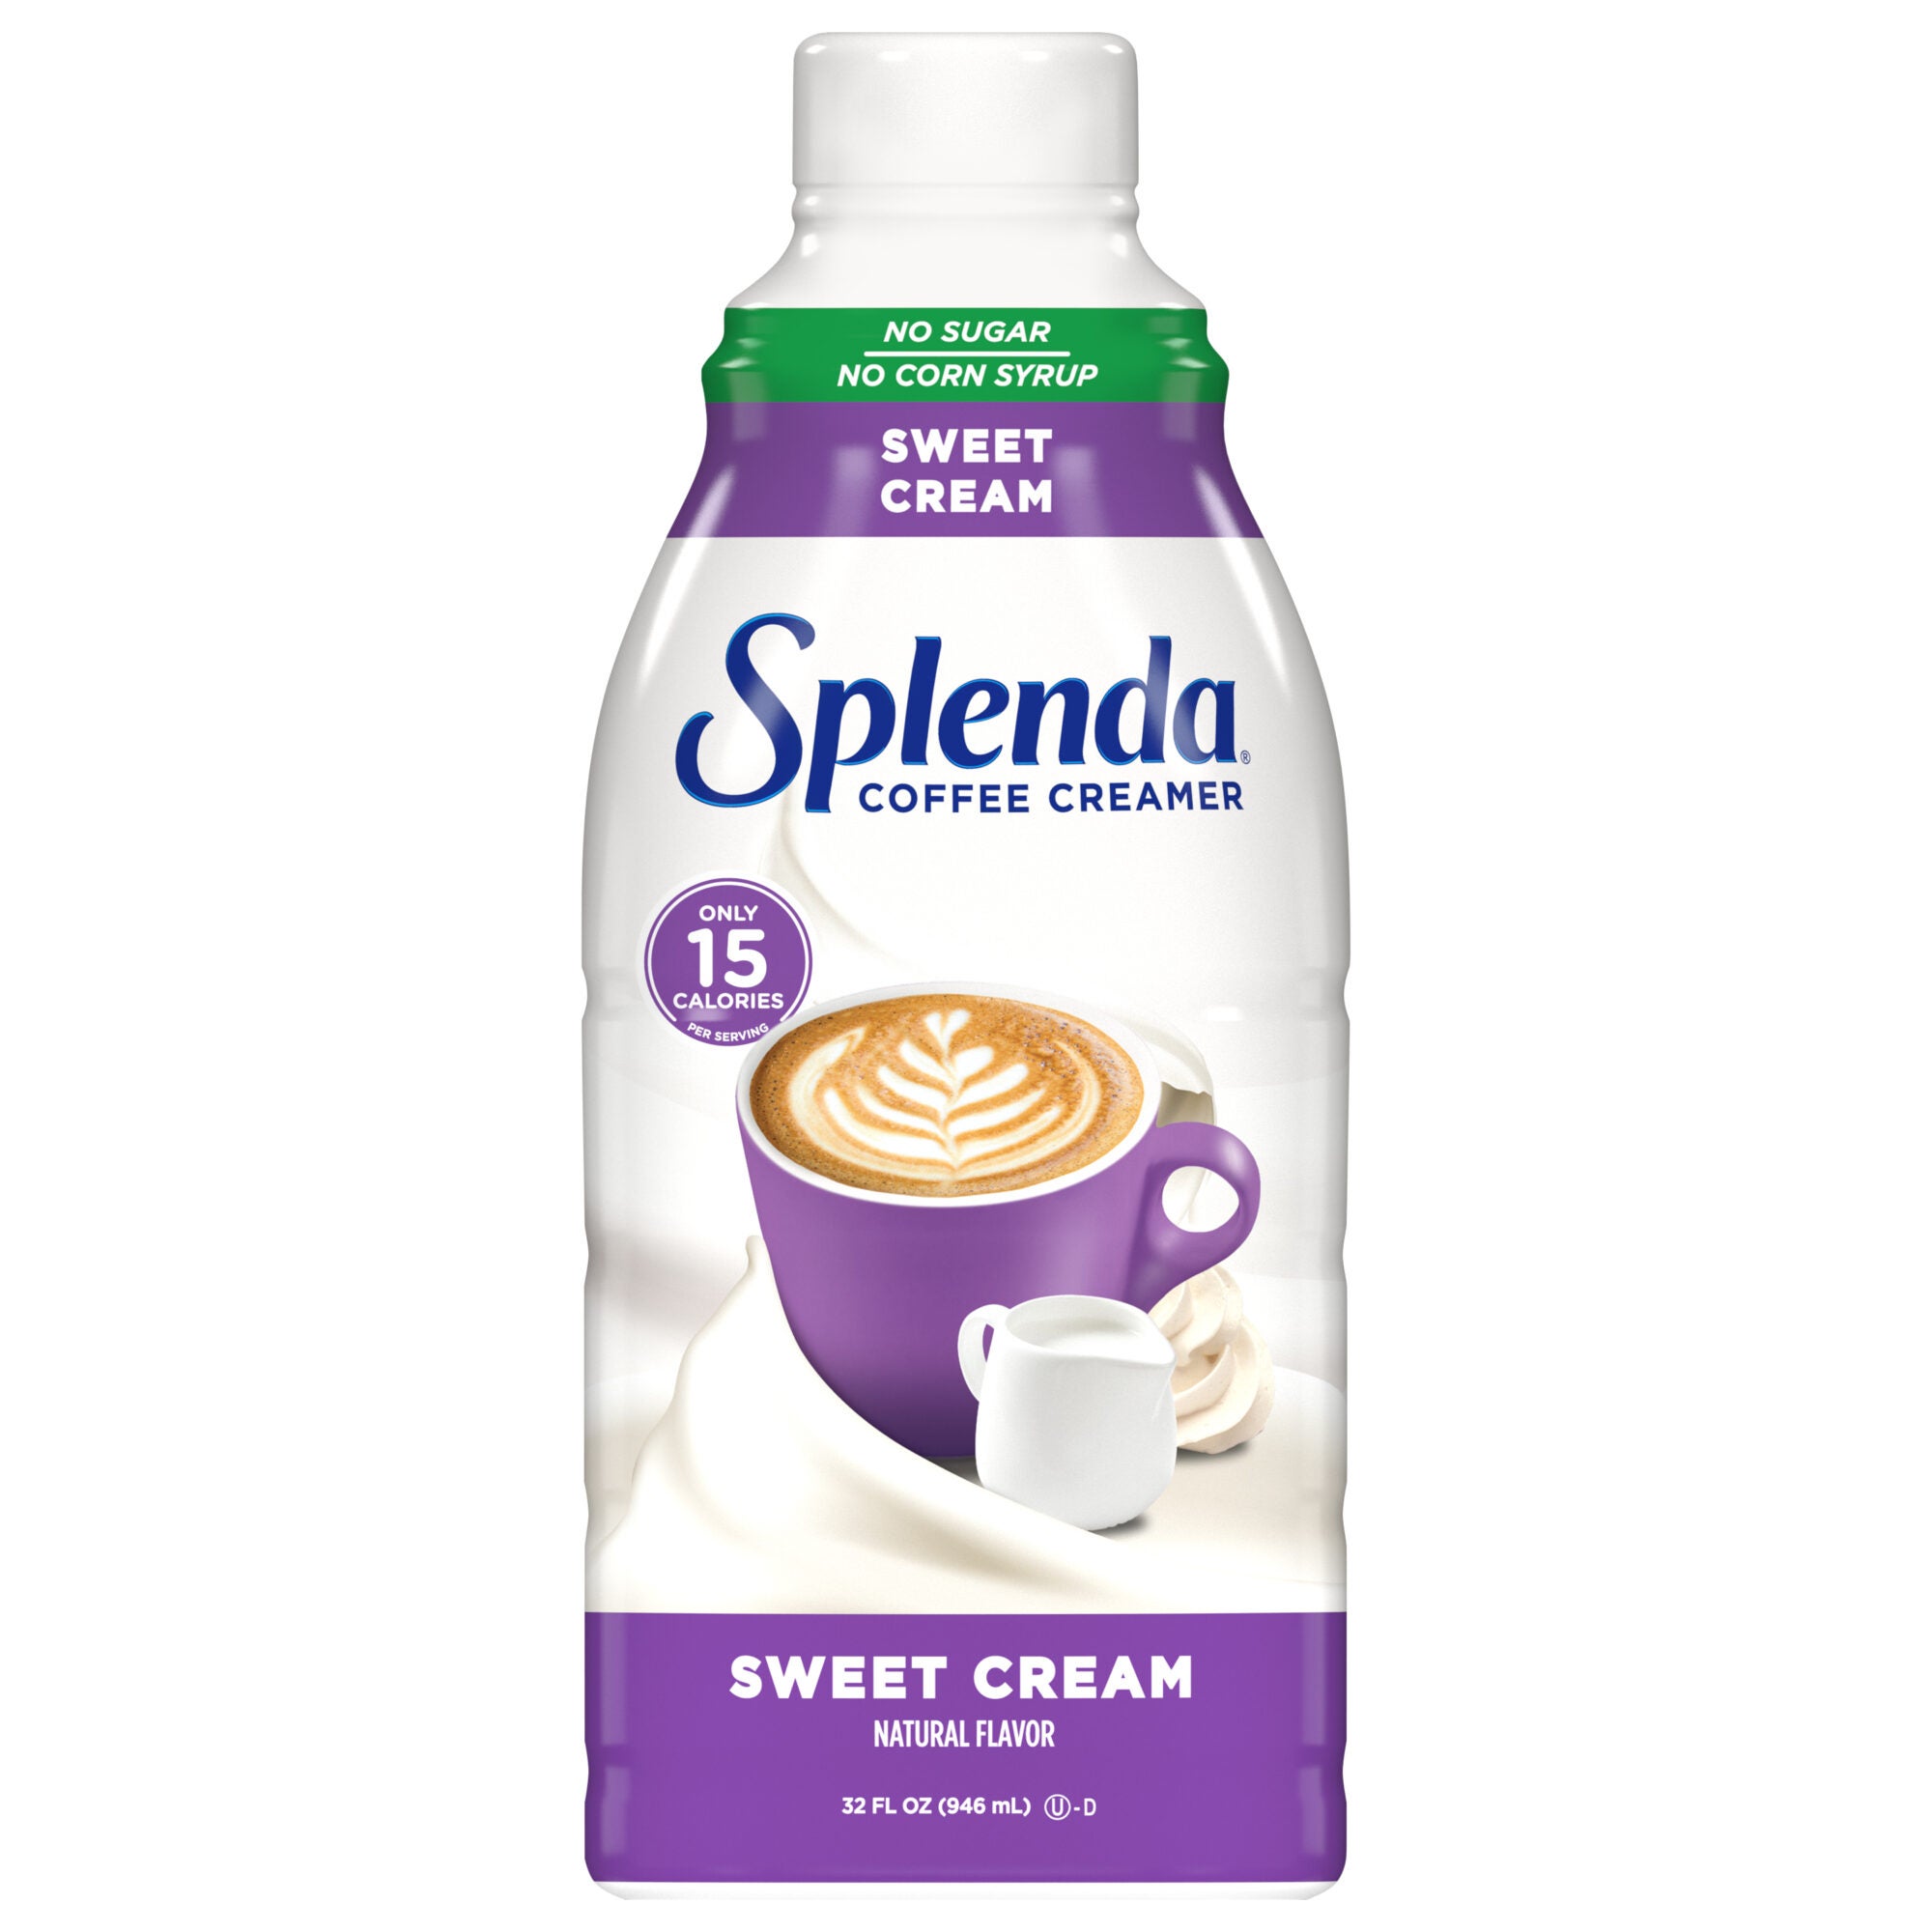 Splenda Crema para Café - Crema Dulce, 32 oz Botella - Frente